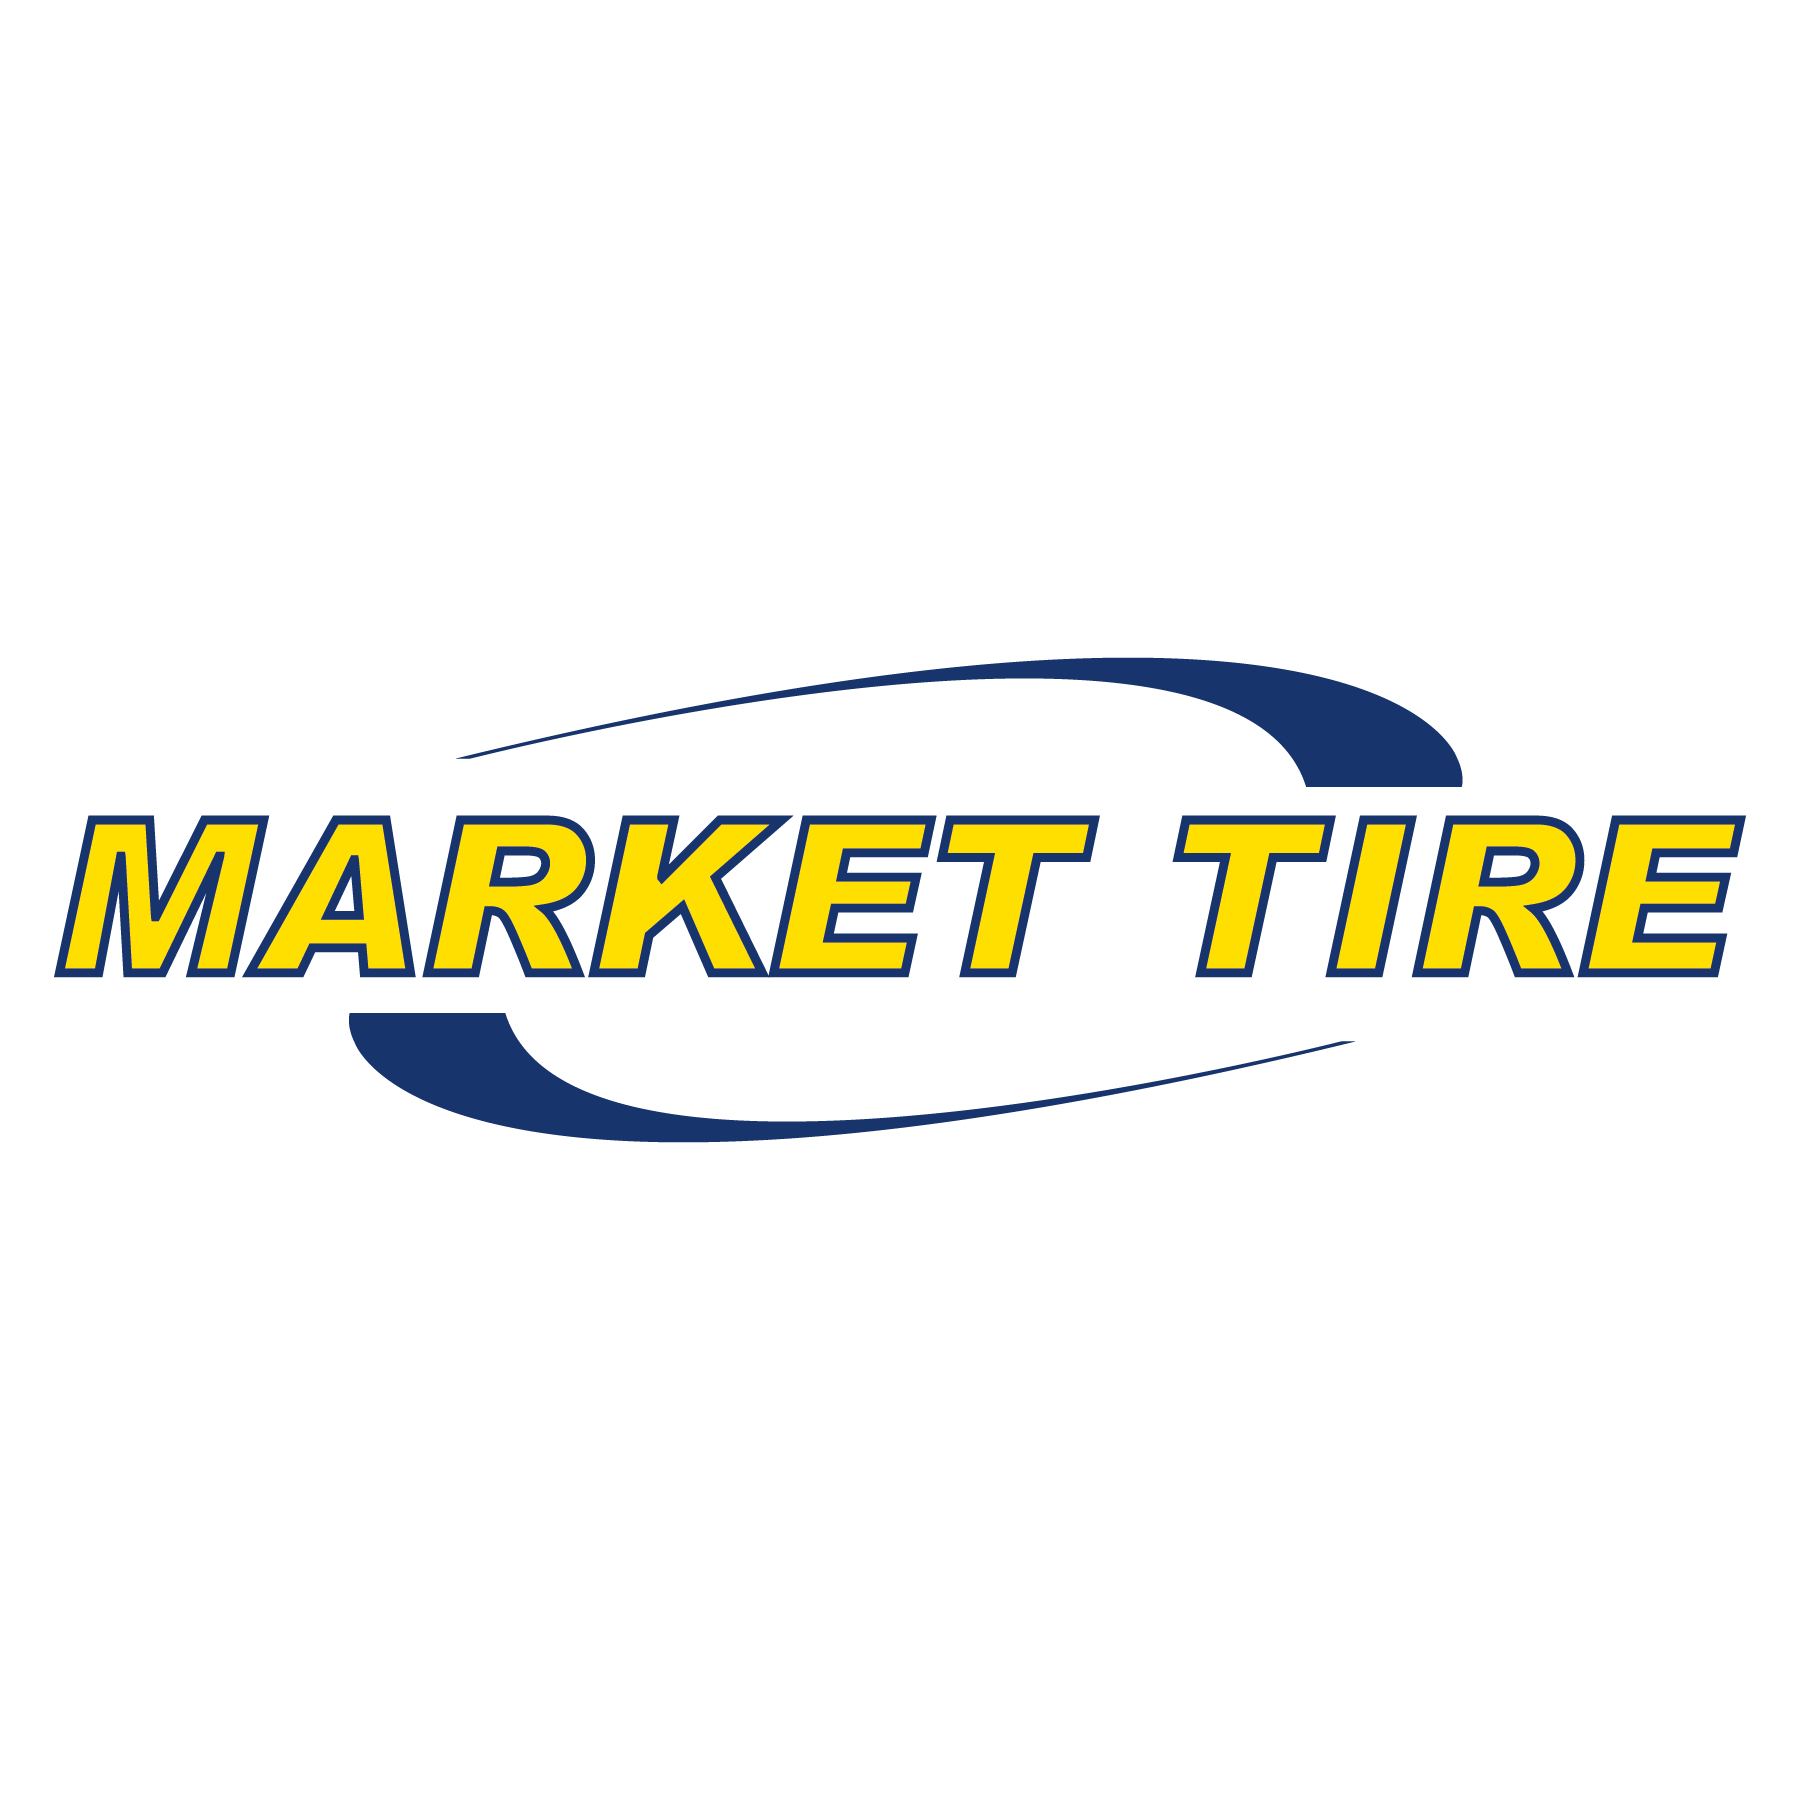 Market Tire - Fabricants et distributeurs de pneus